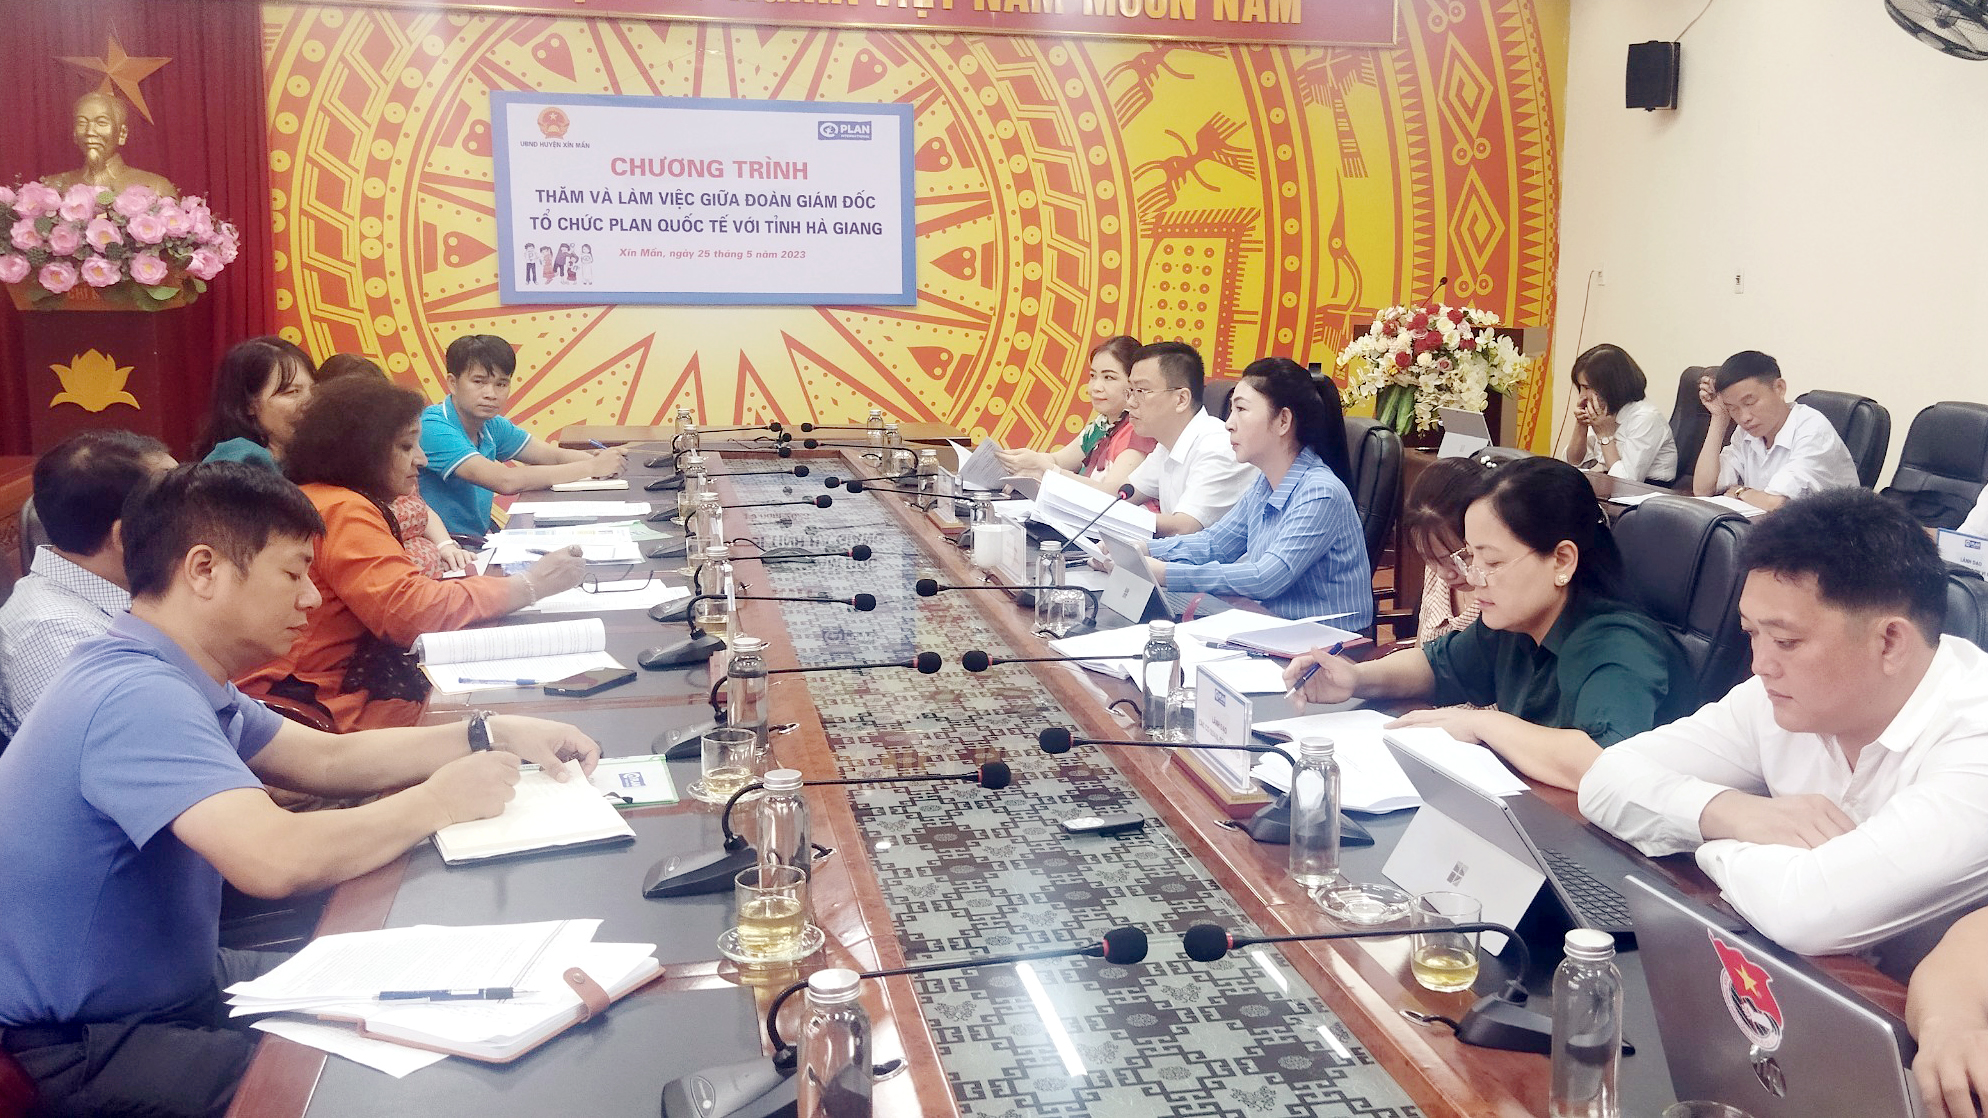 Đoàn Giám đốc Tổ chức Plan quốc tế thăm và làm việc tại tỉnh Hà Giang